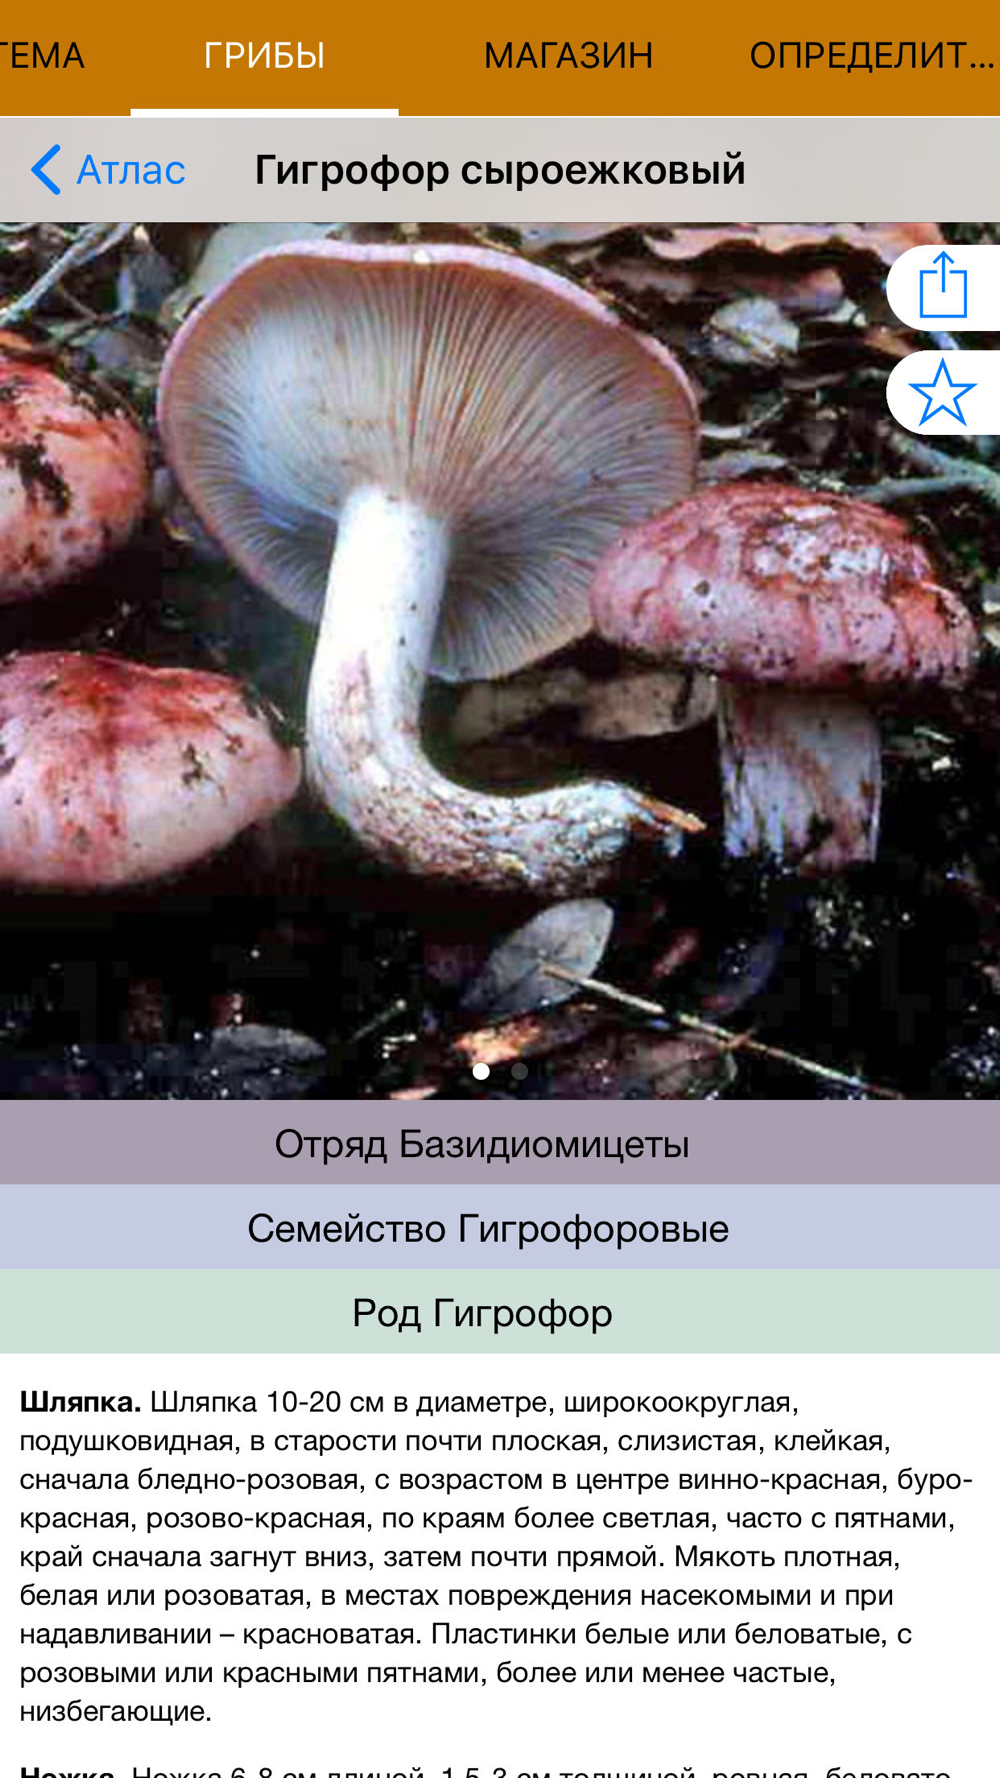 определение грибов по фото с названием